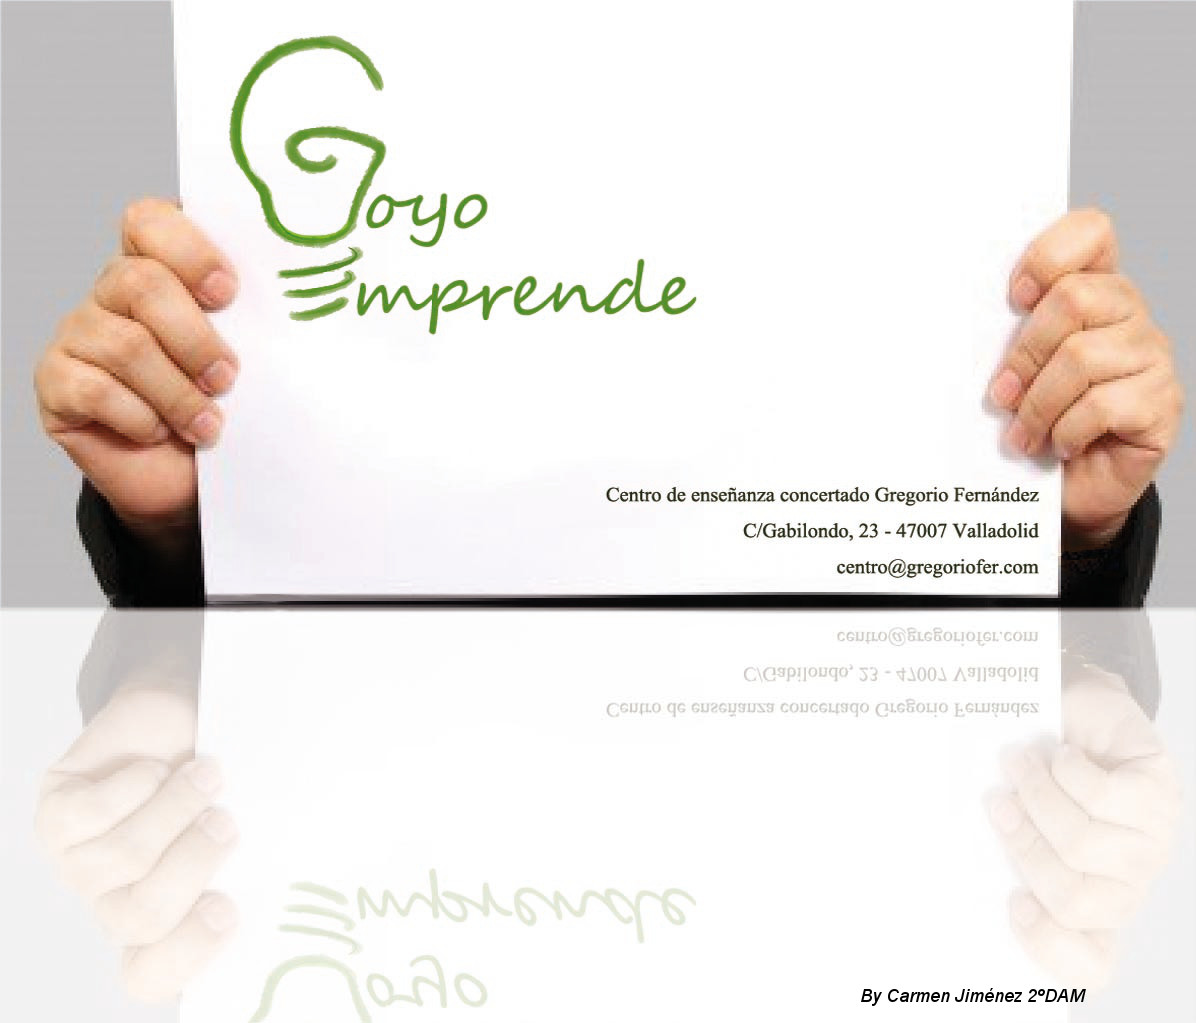 Goyoemprende – Jornadas del emprendimiento – Gregorio Fernández